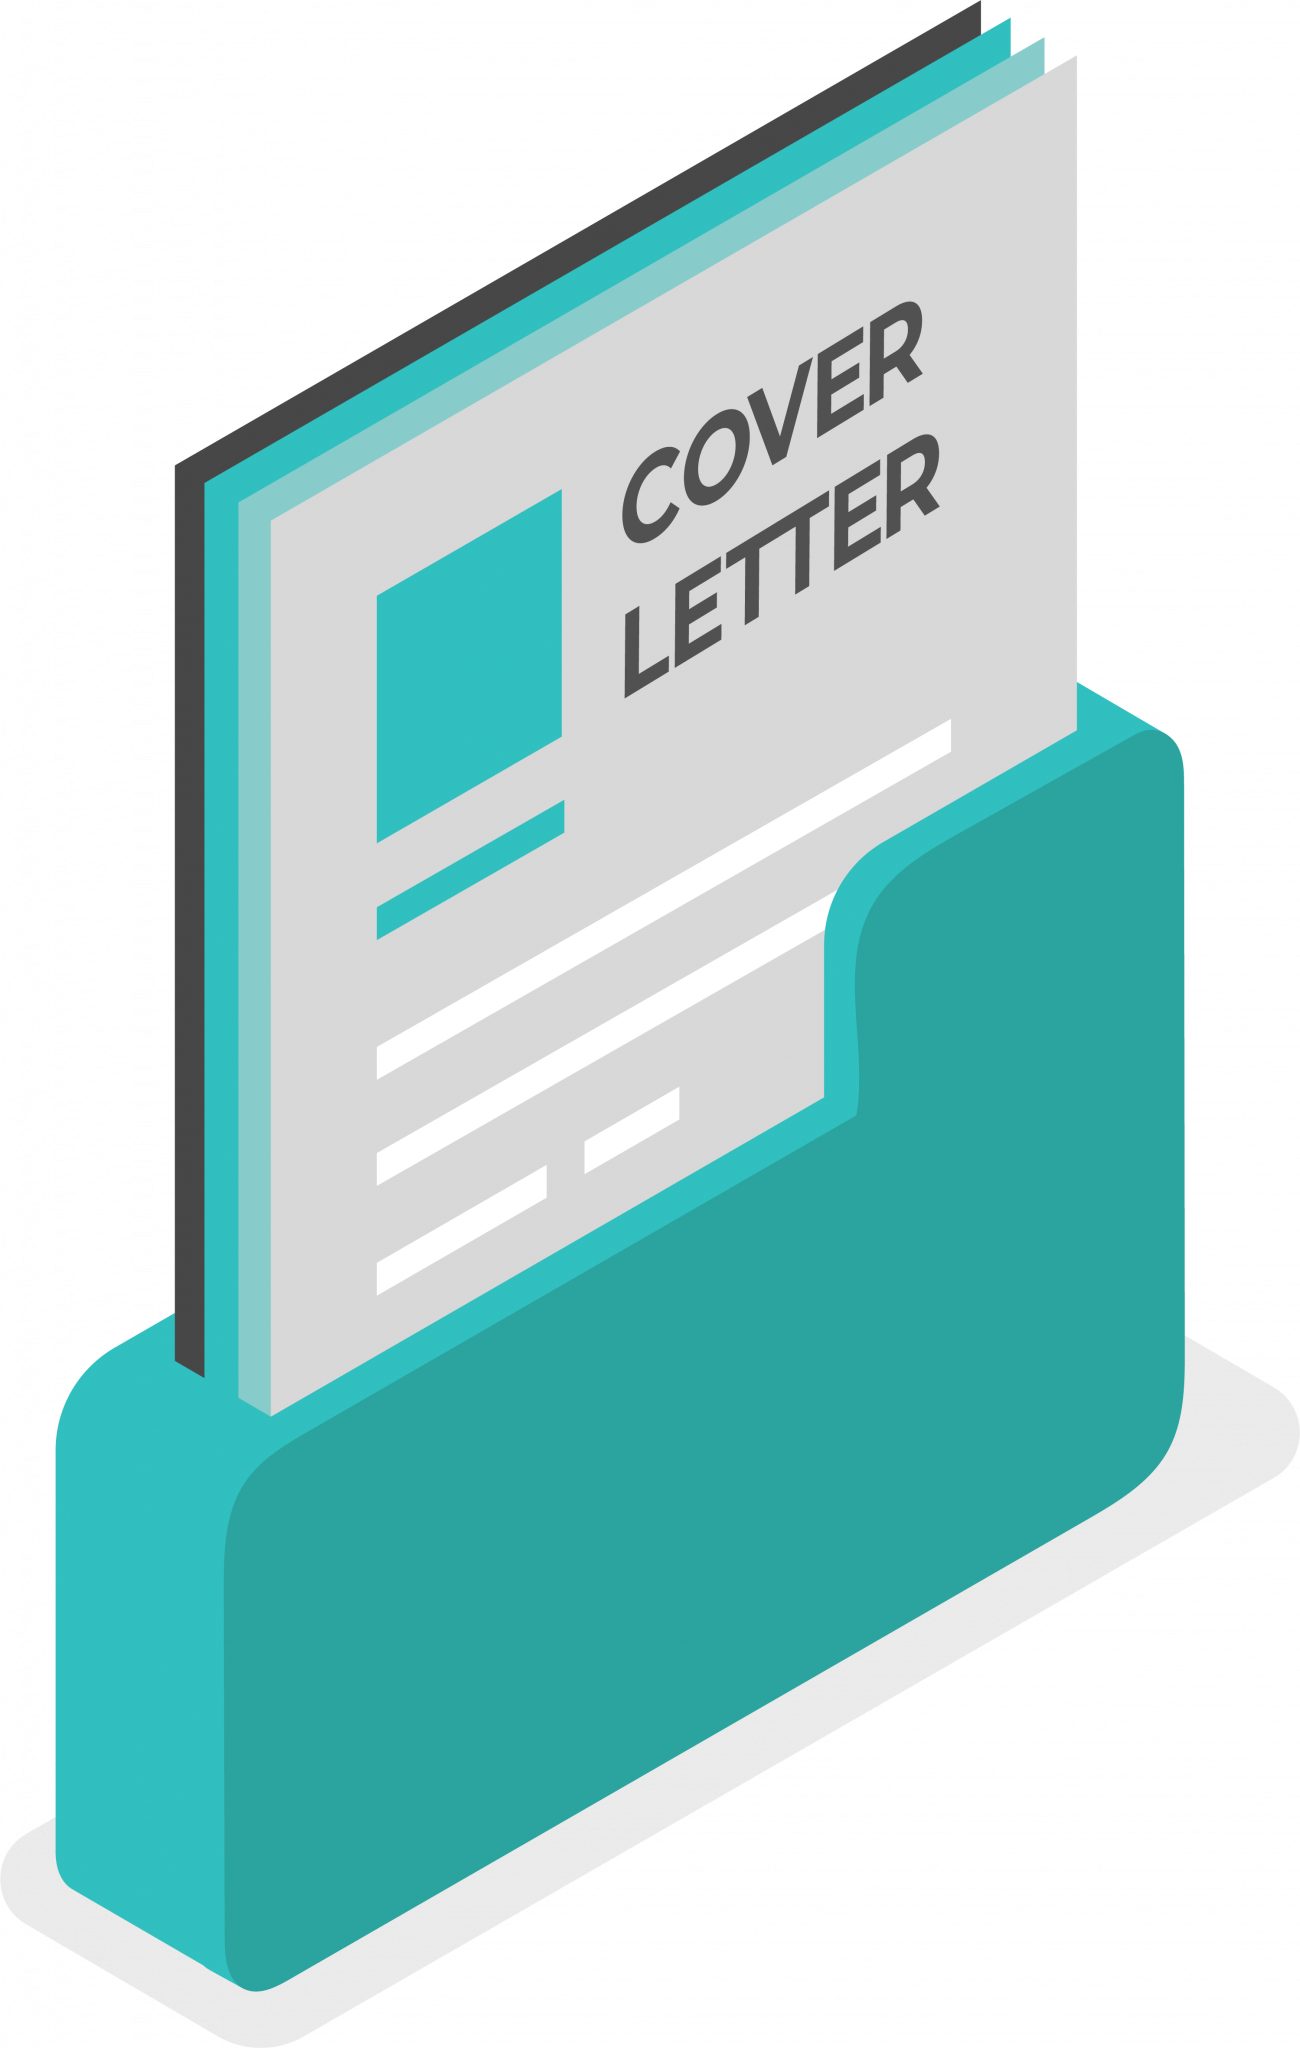 cover letter clip art